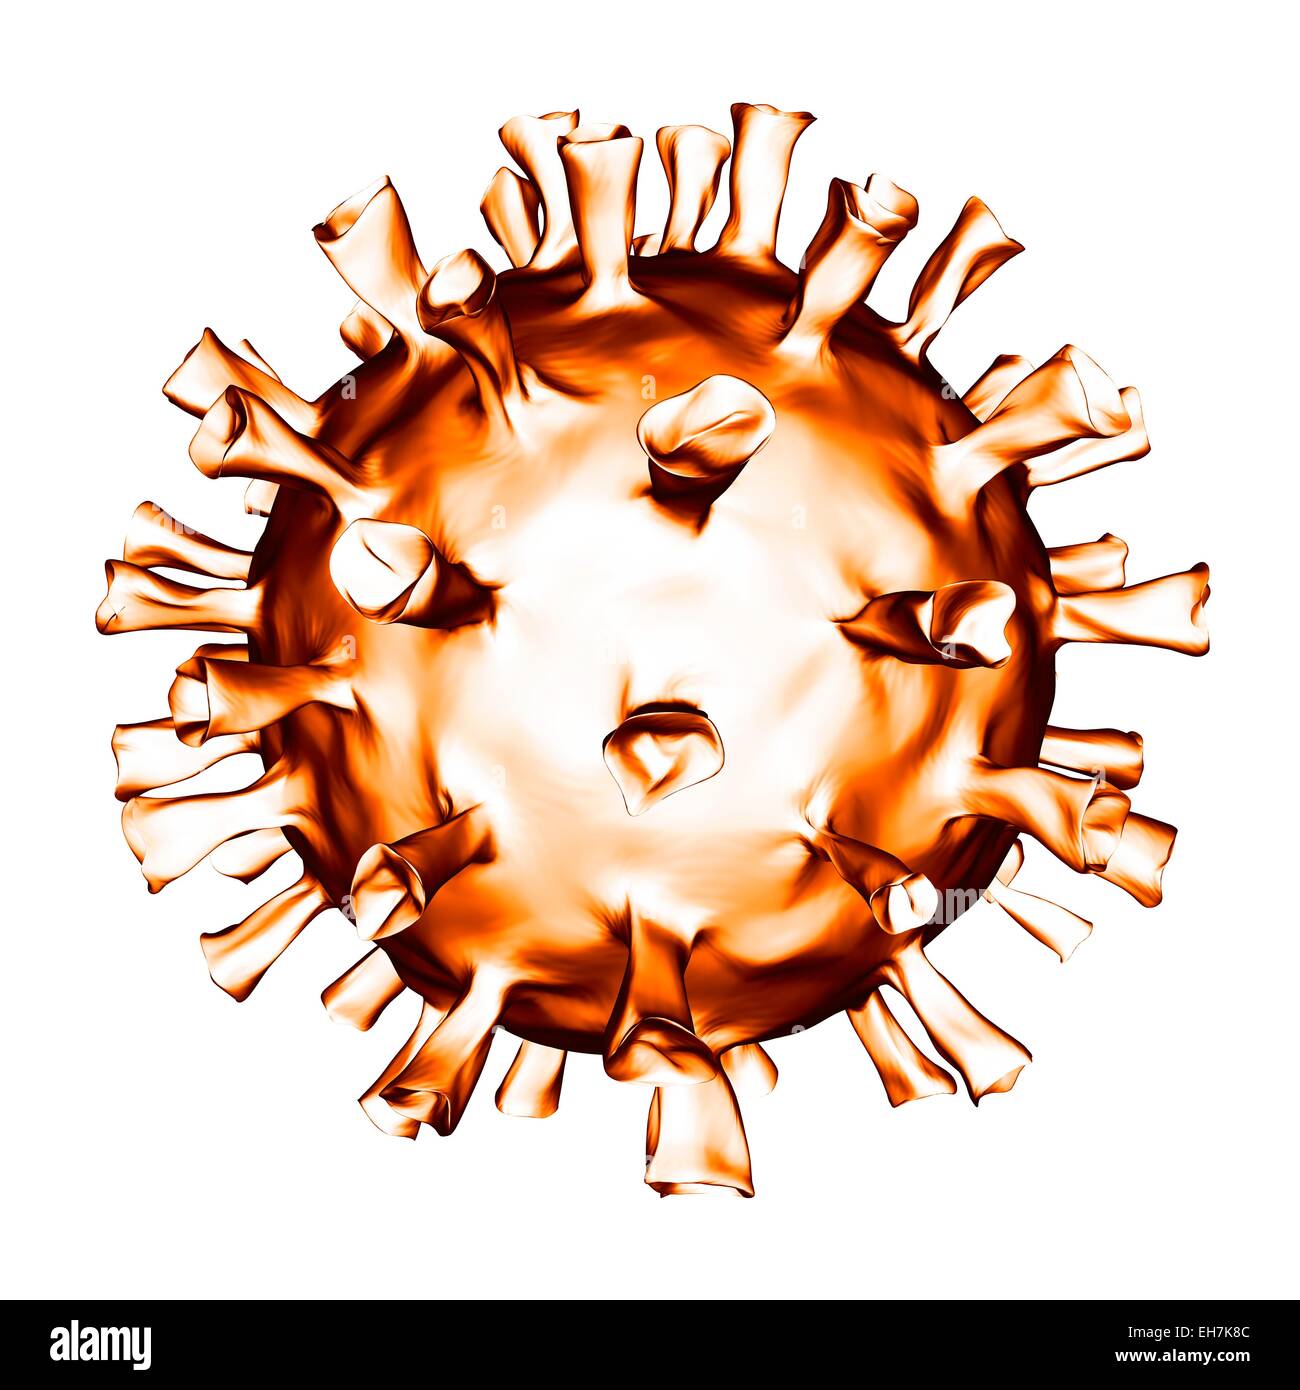 Virus, illustrazione concettuale Foto Stock